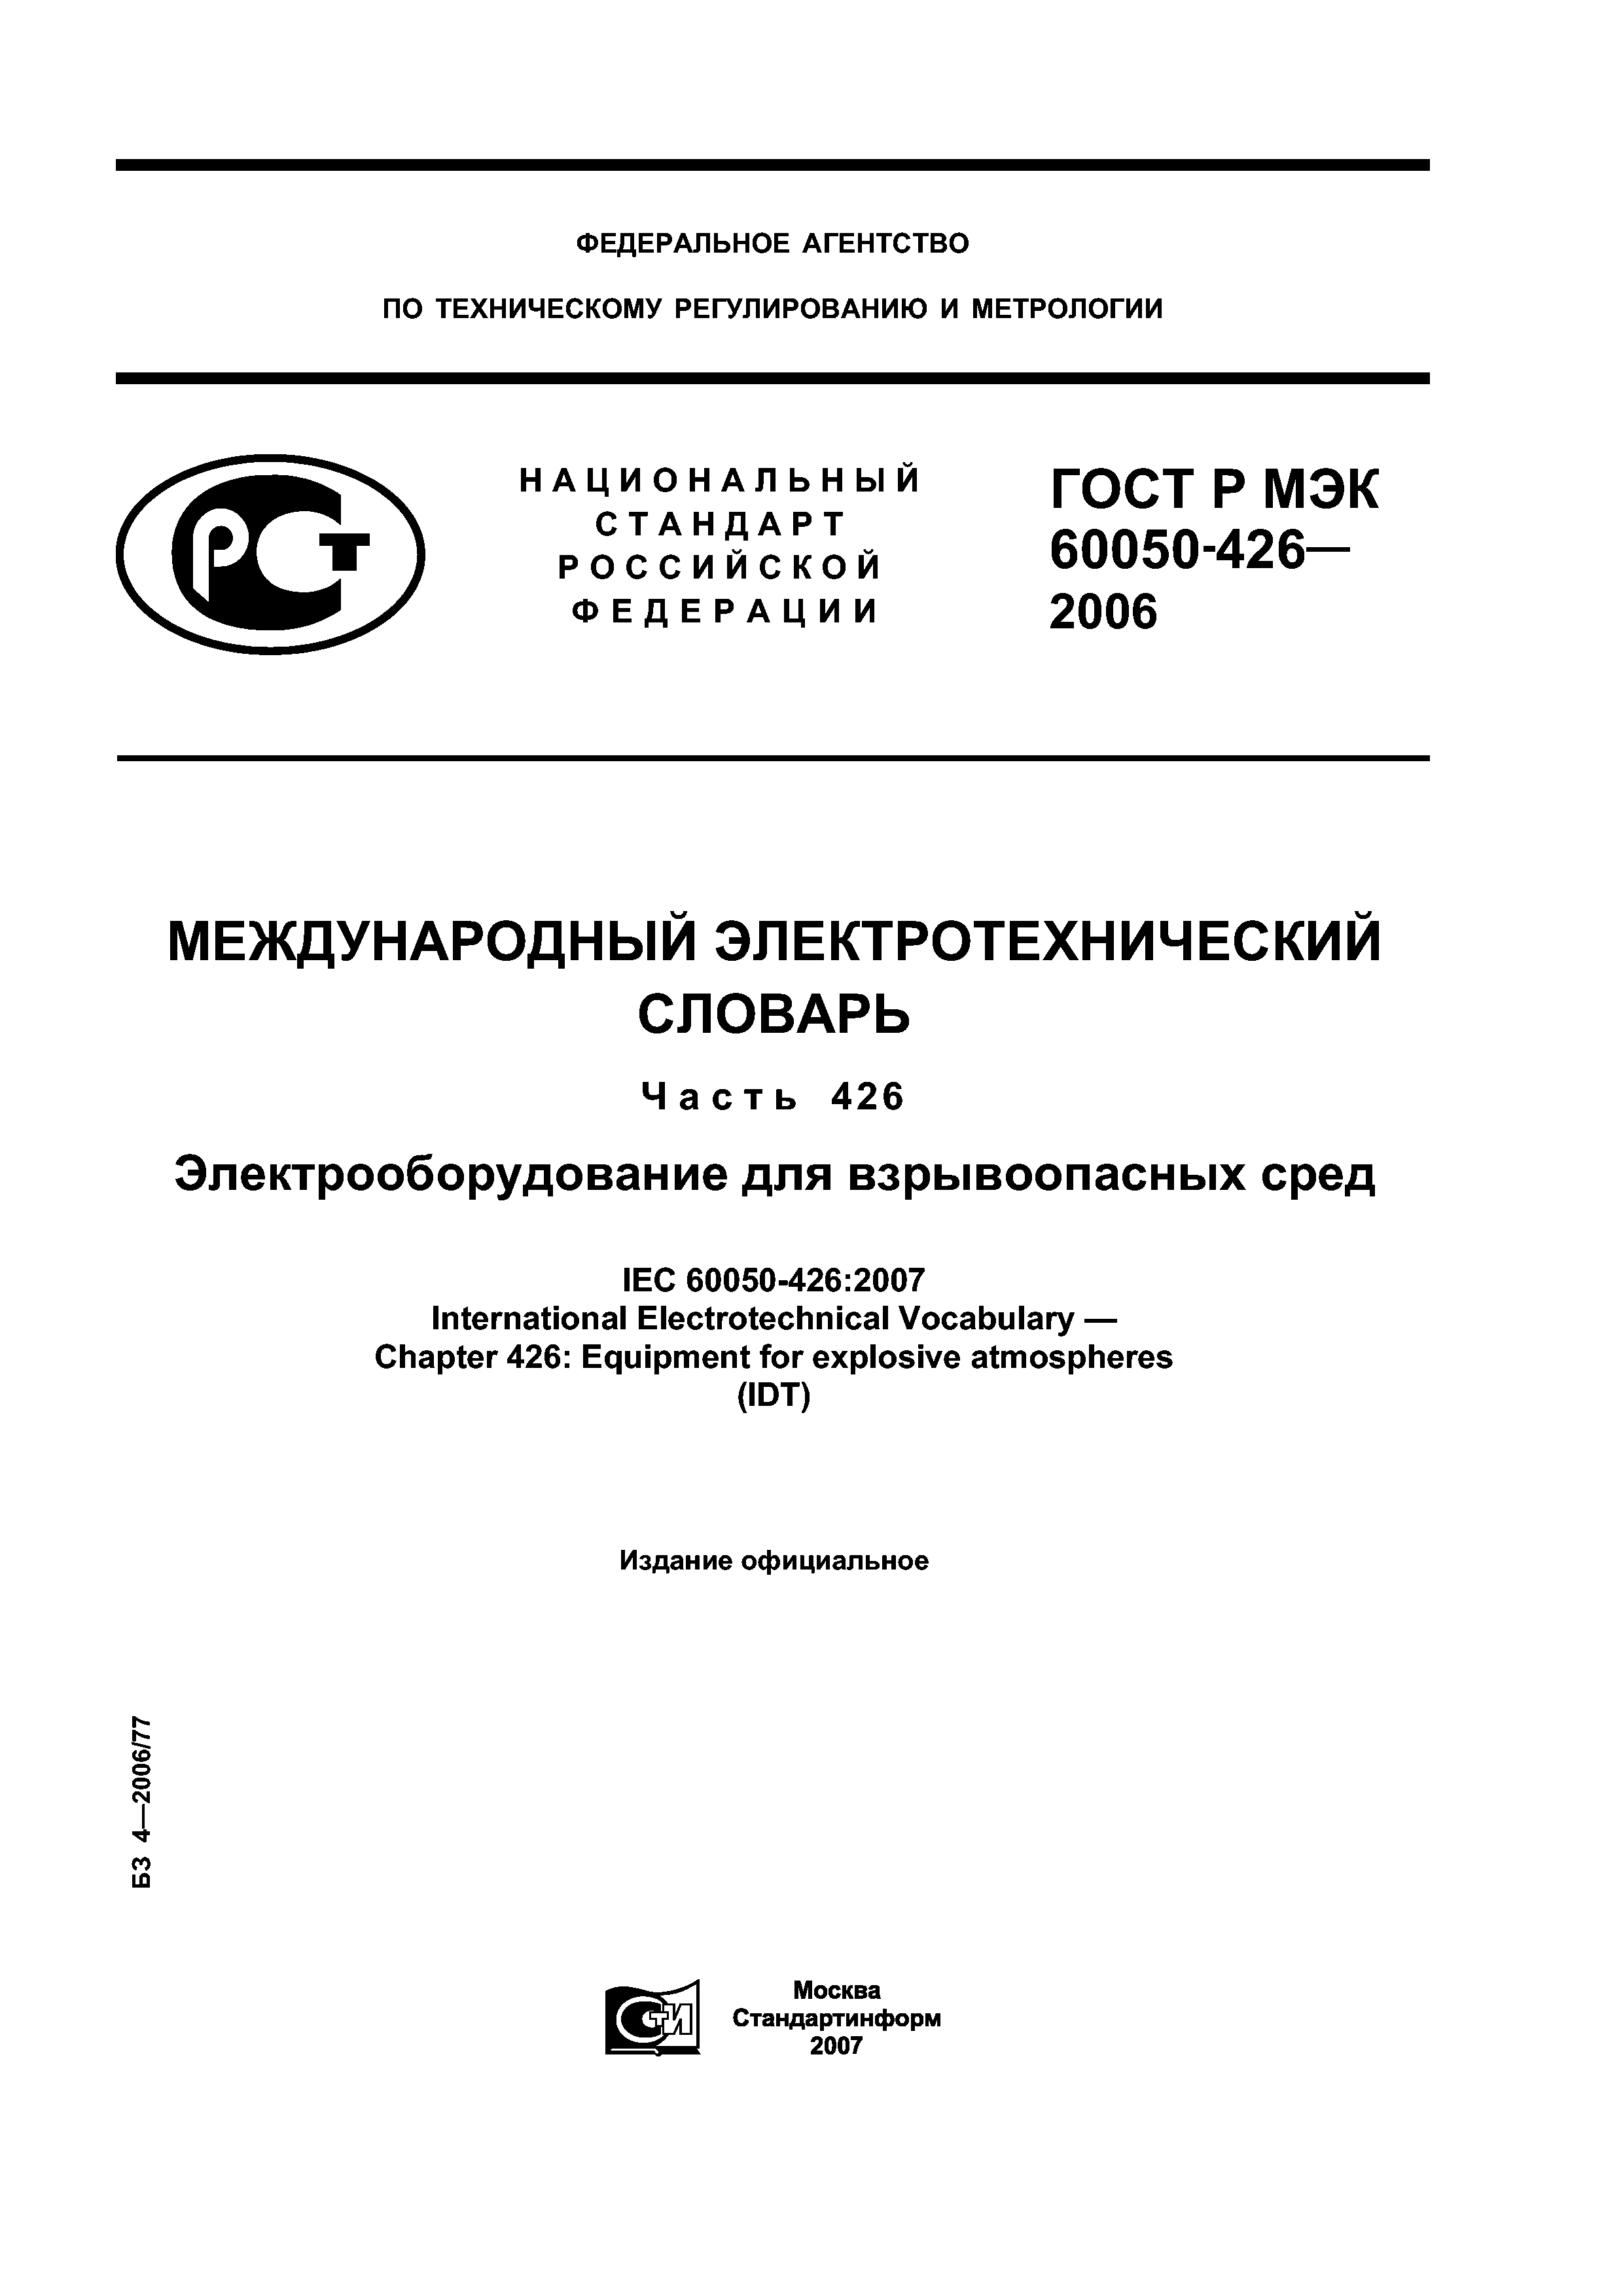 ГОСТ Р МЭК 60050-426-2006